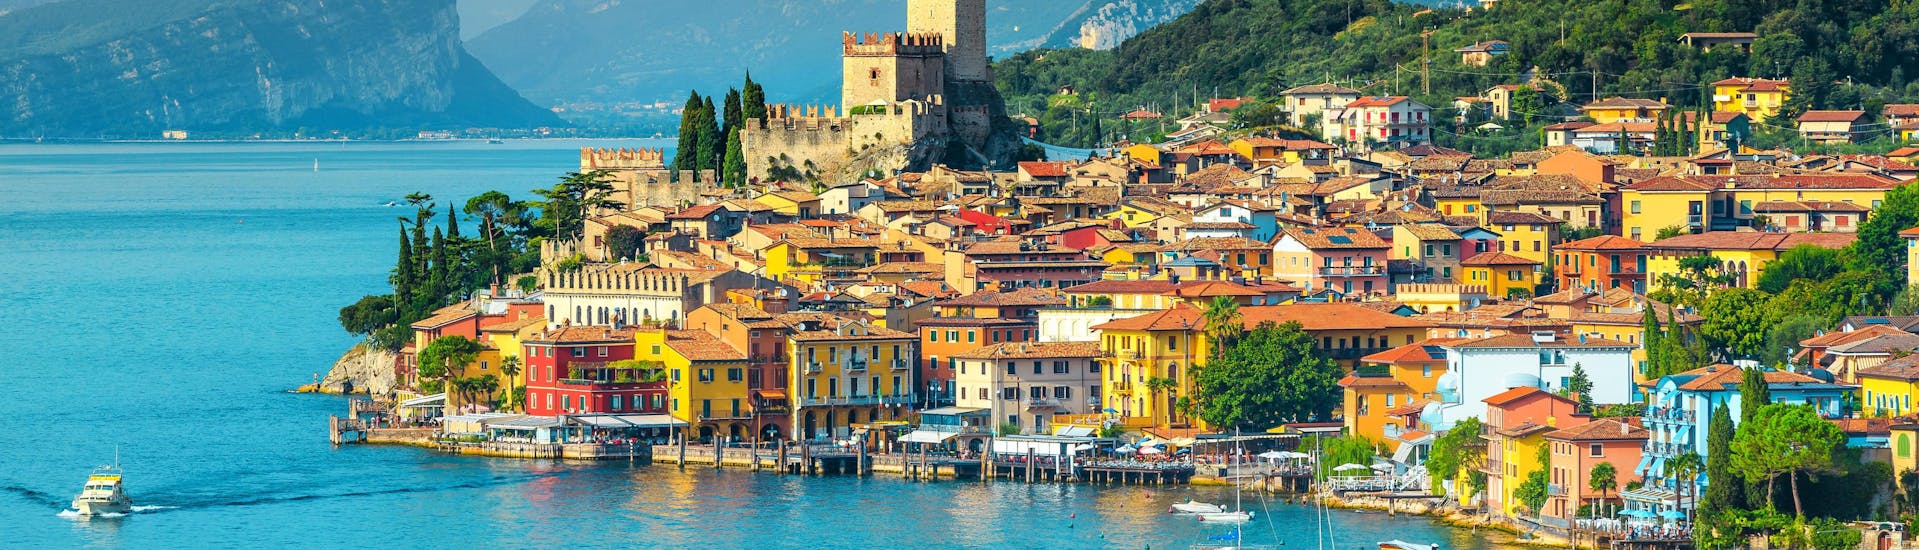 La ciudad de Malcesine, en el lago de Garda (Italia).